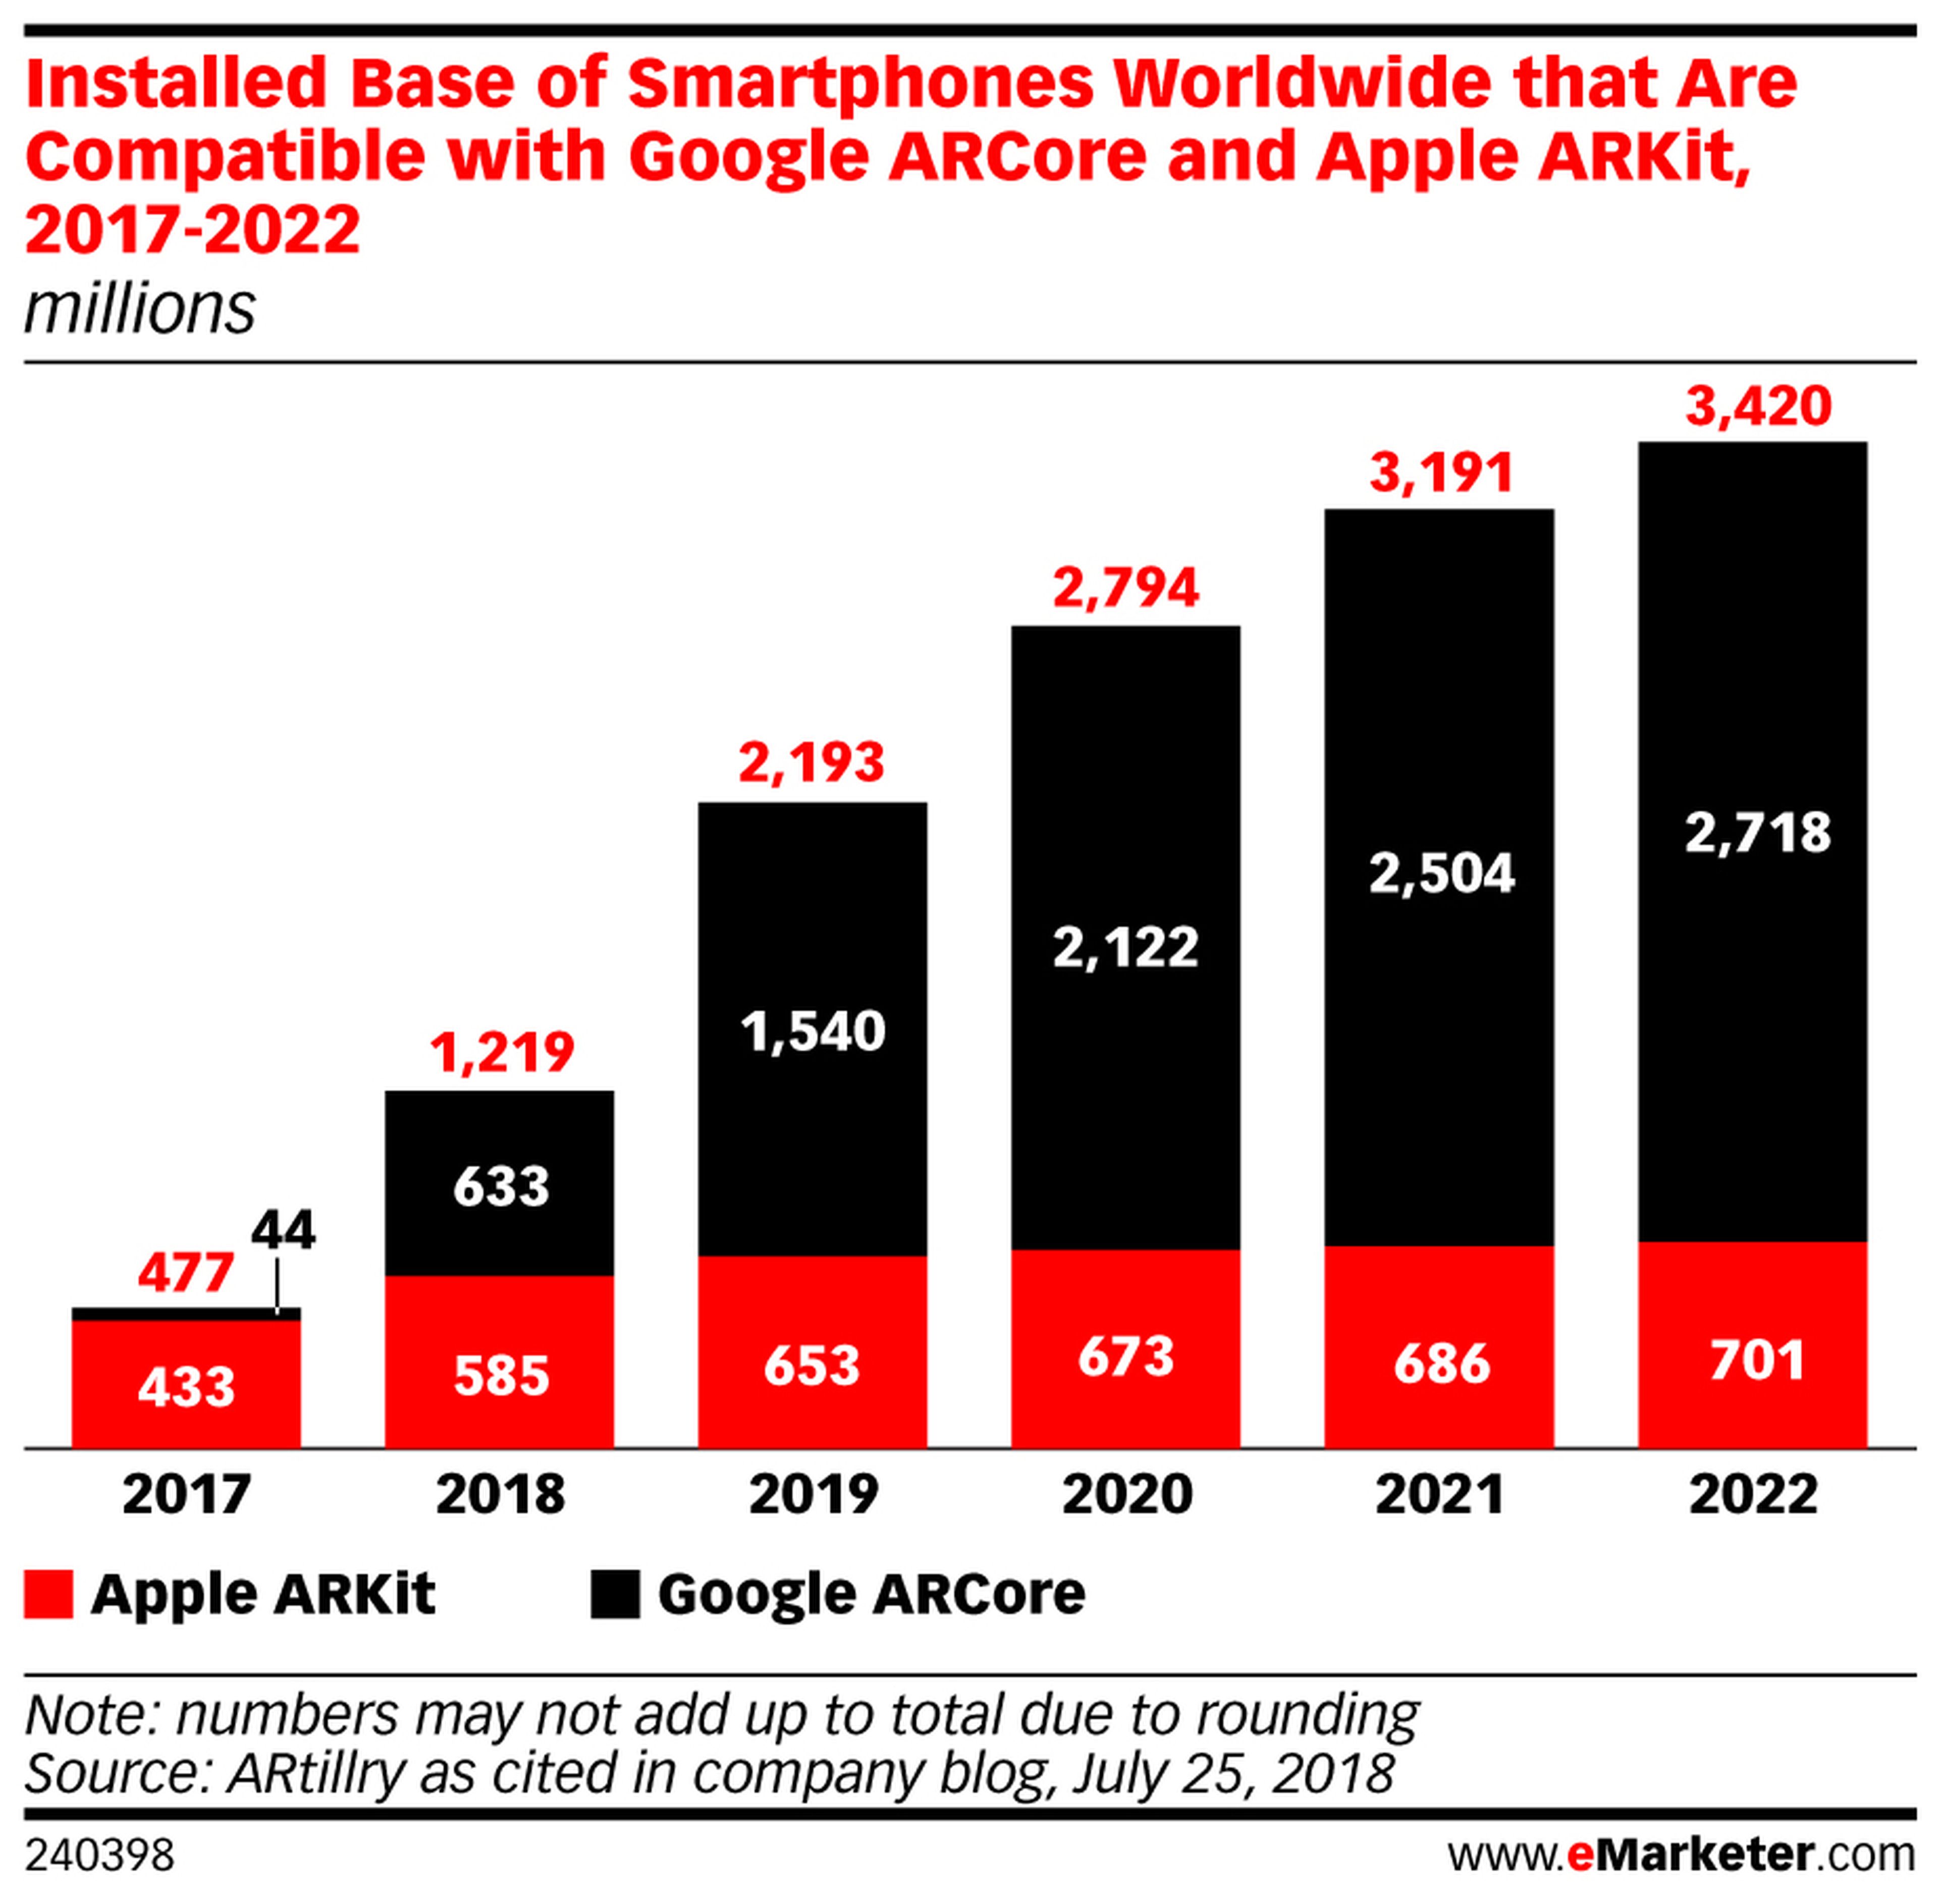 Smartphones compatibles con la realidad aumentada de Google y Apple a nivel mundial, de 2017 a 2022.